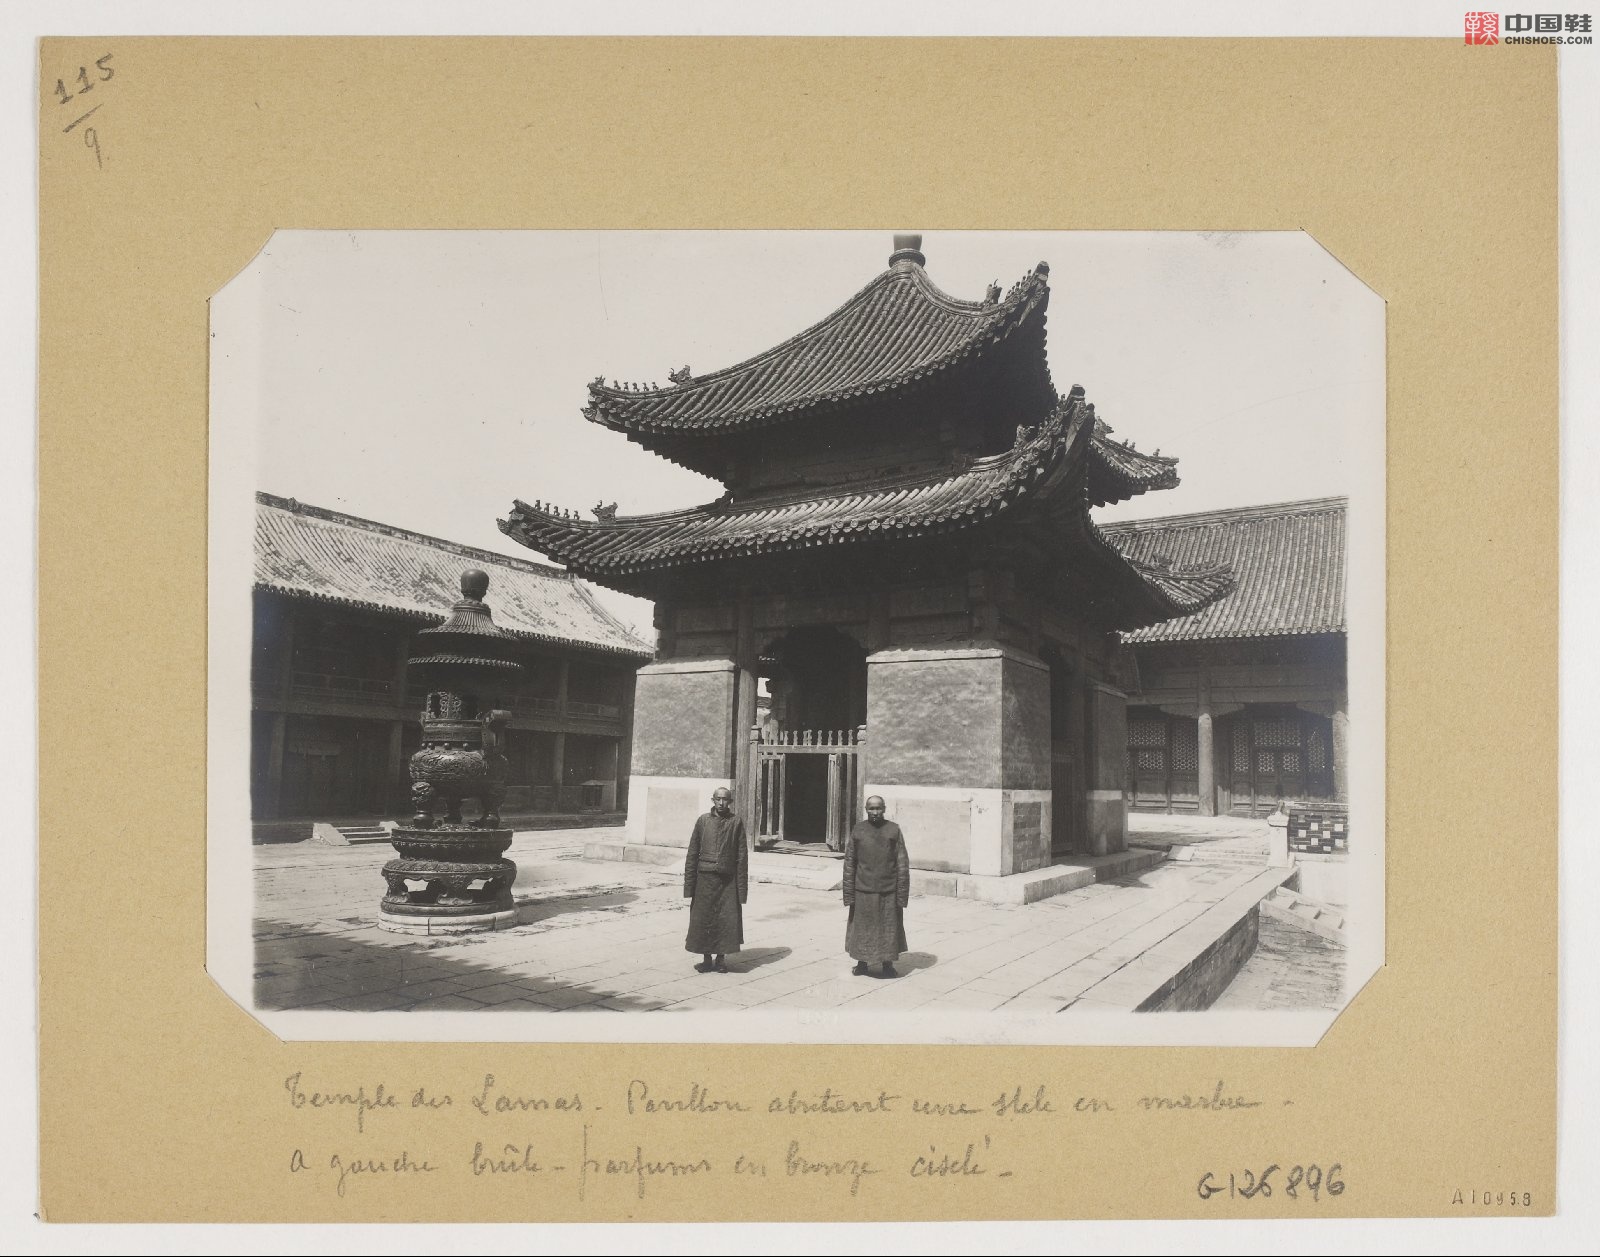 拉里贝的中国影像记录.415幅.By Firmin Laribe.1900-1910年_Page_330.jpg